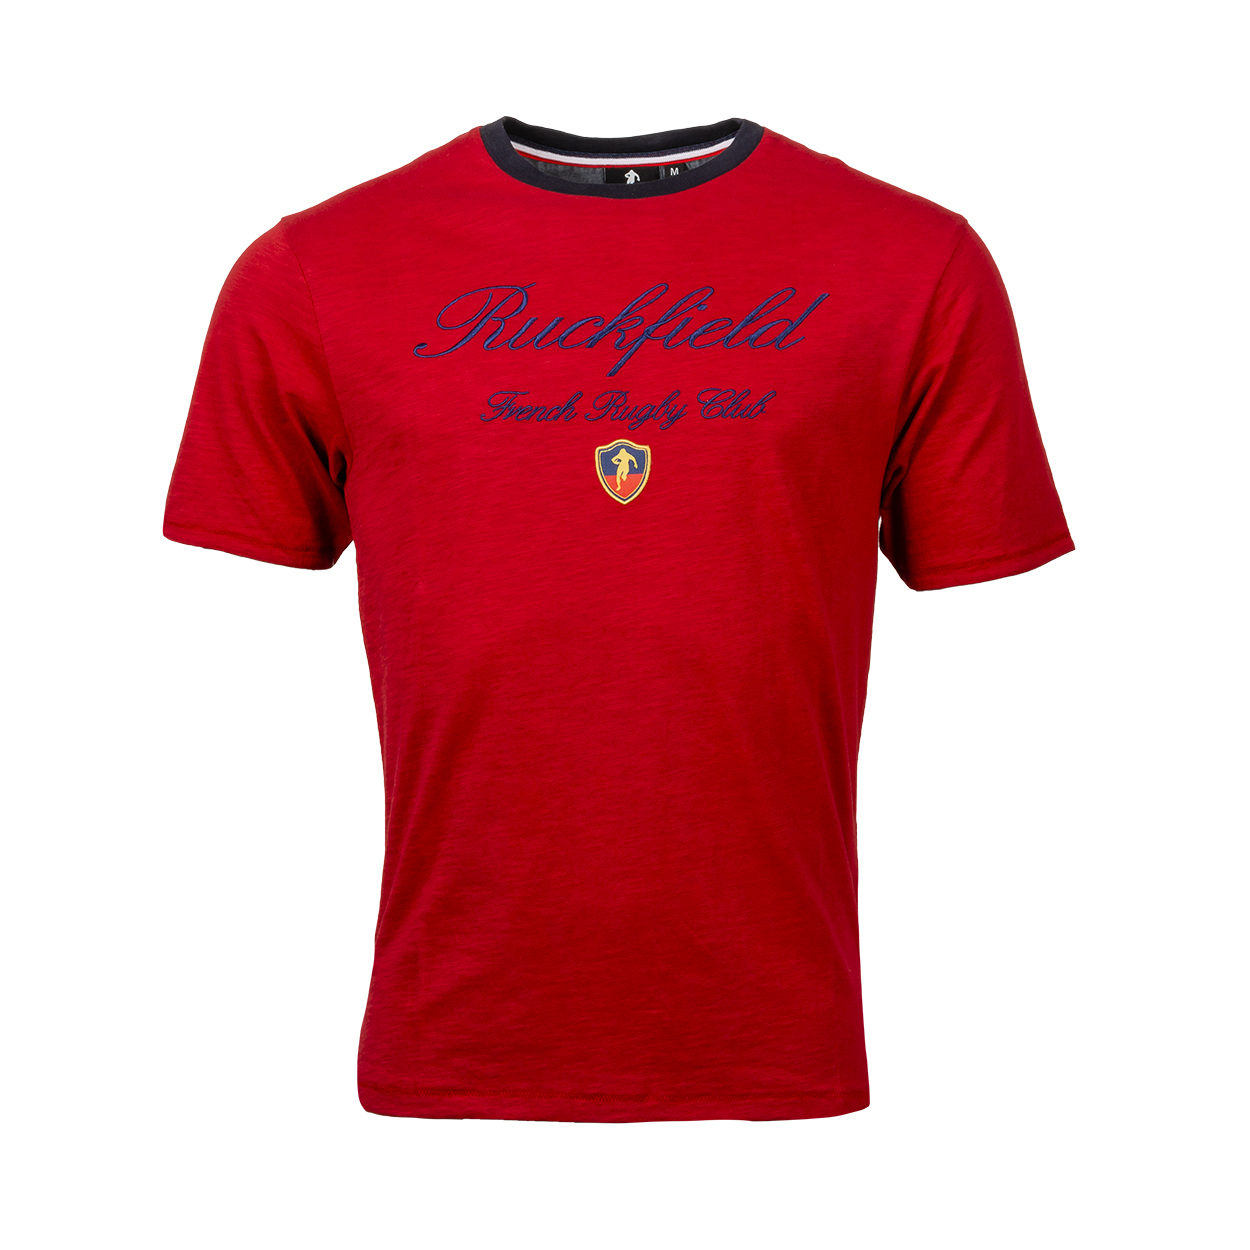 Tee-shirt col rond Ruckfield en coton rouge bordeaux brodé